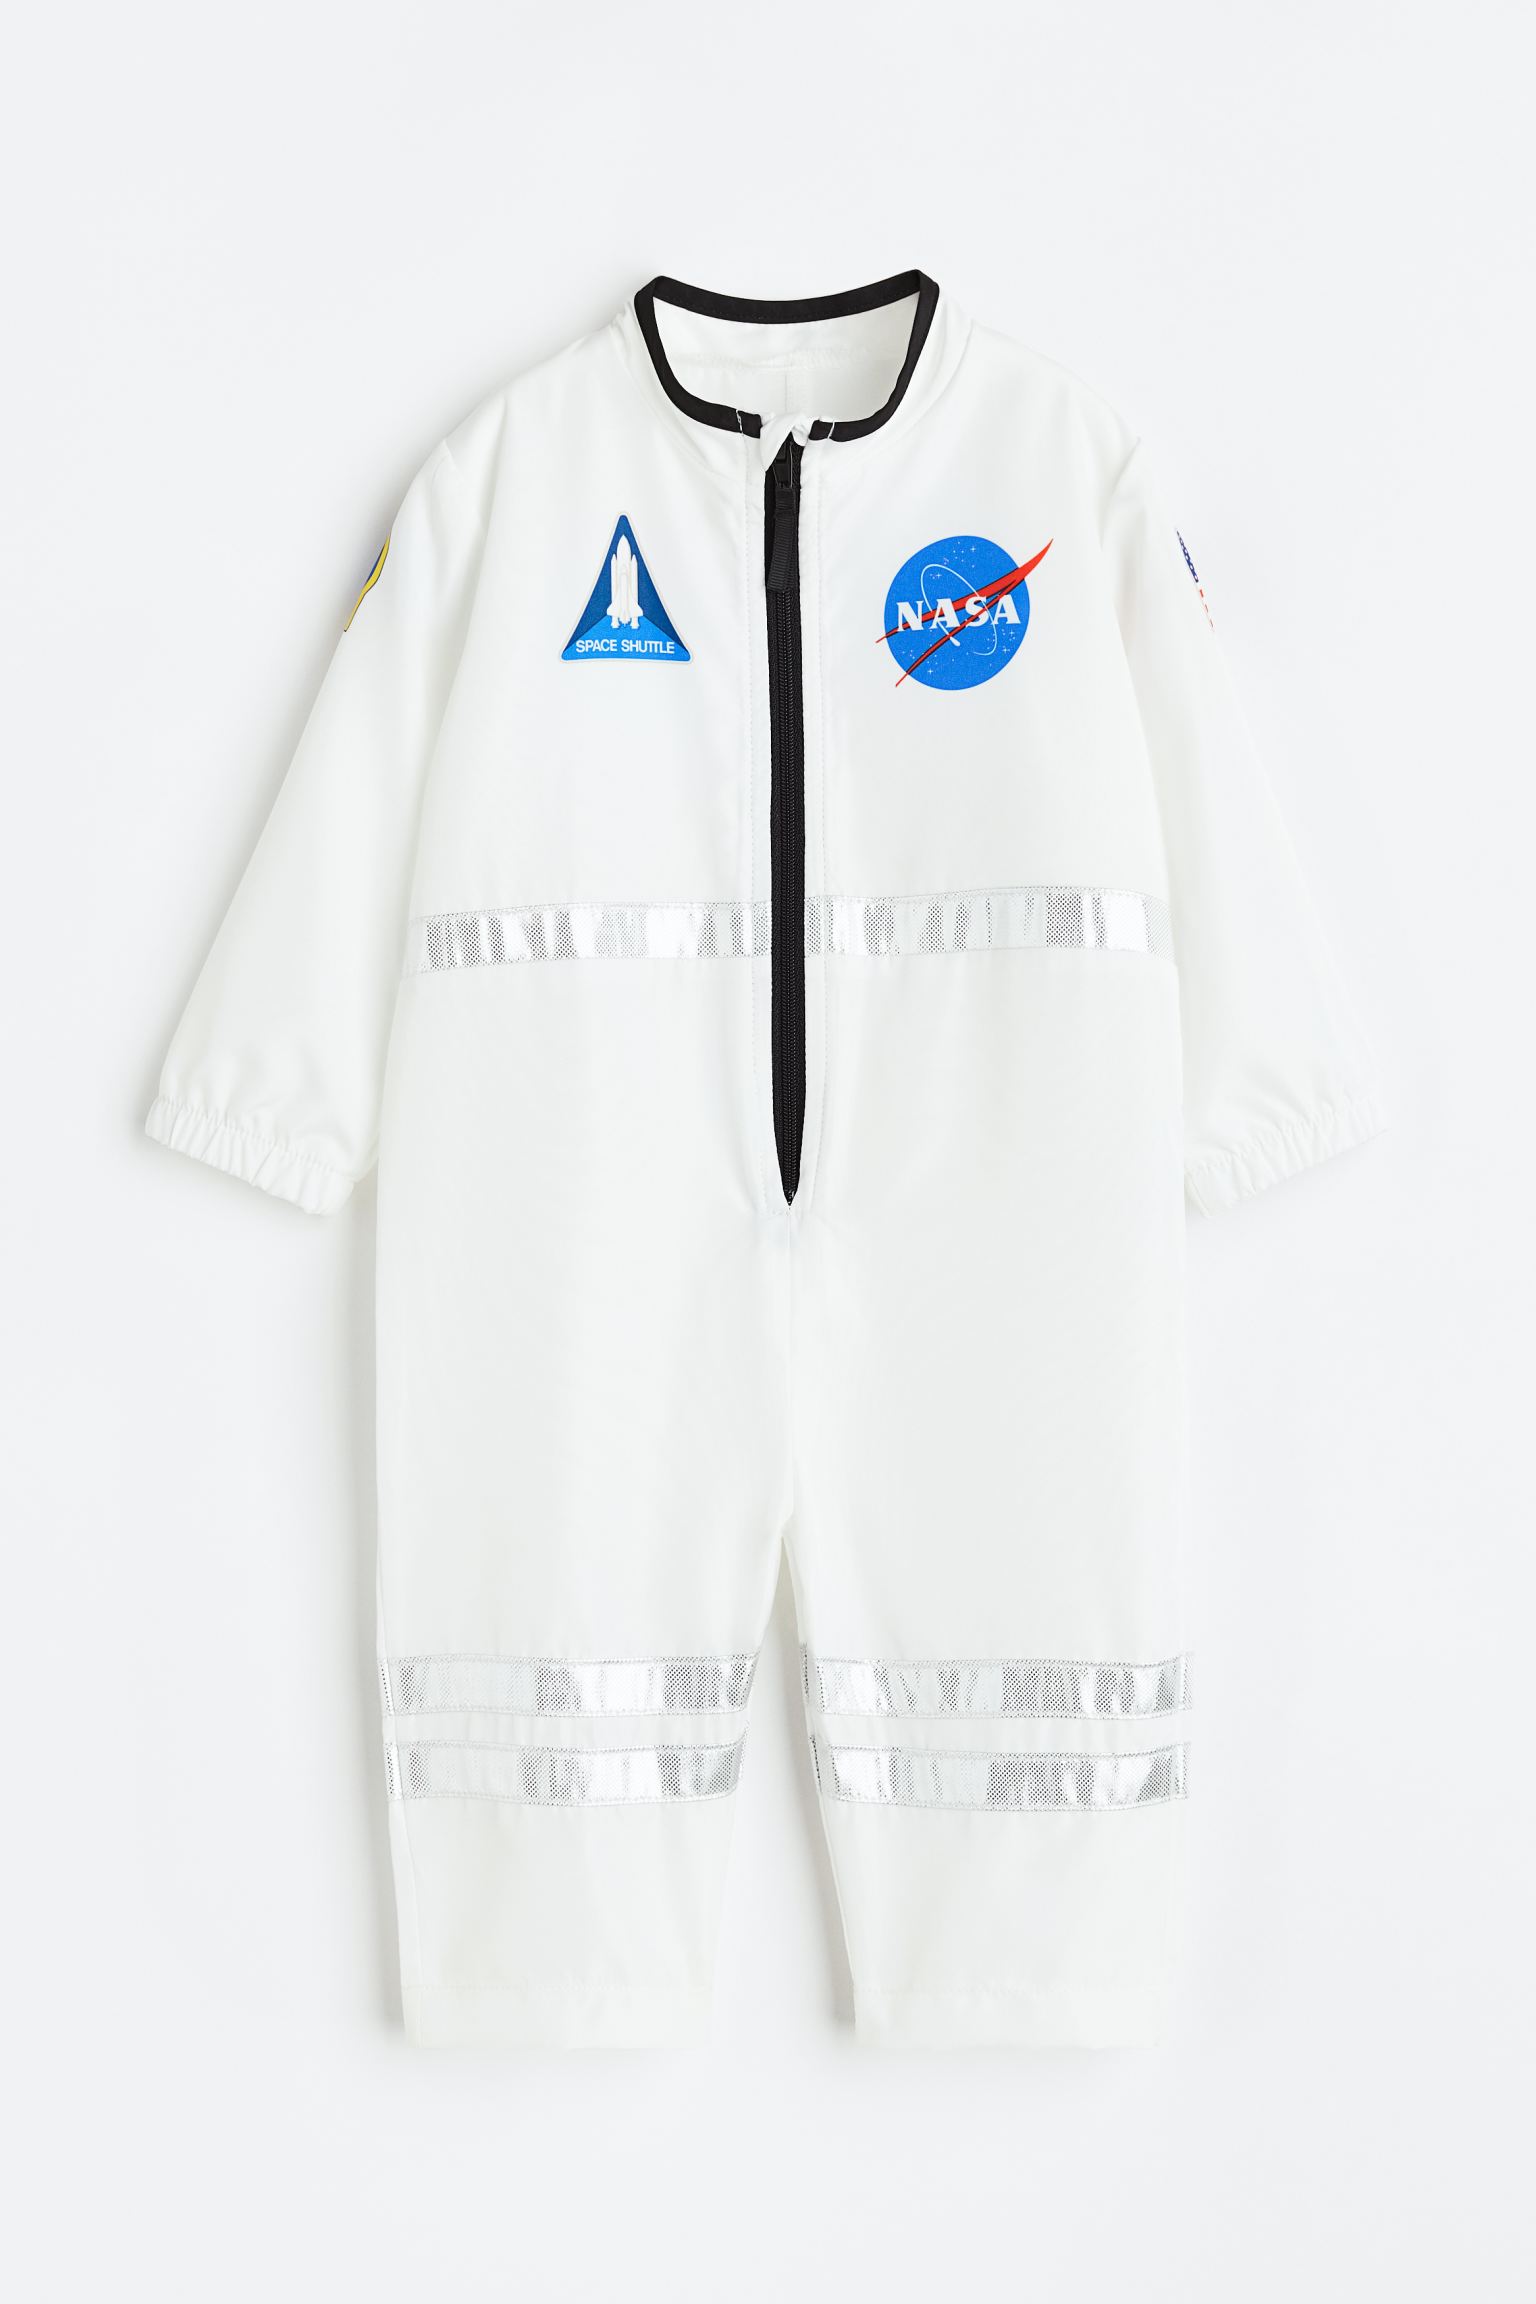 Костюм космонавта H&M для мальчиков 74/80 Белый/НАСА (доставка из-за рубежа)